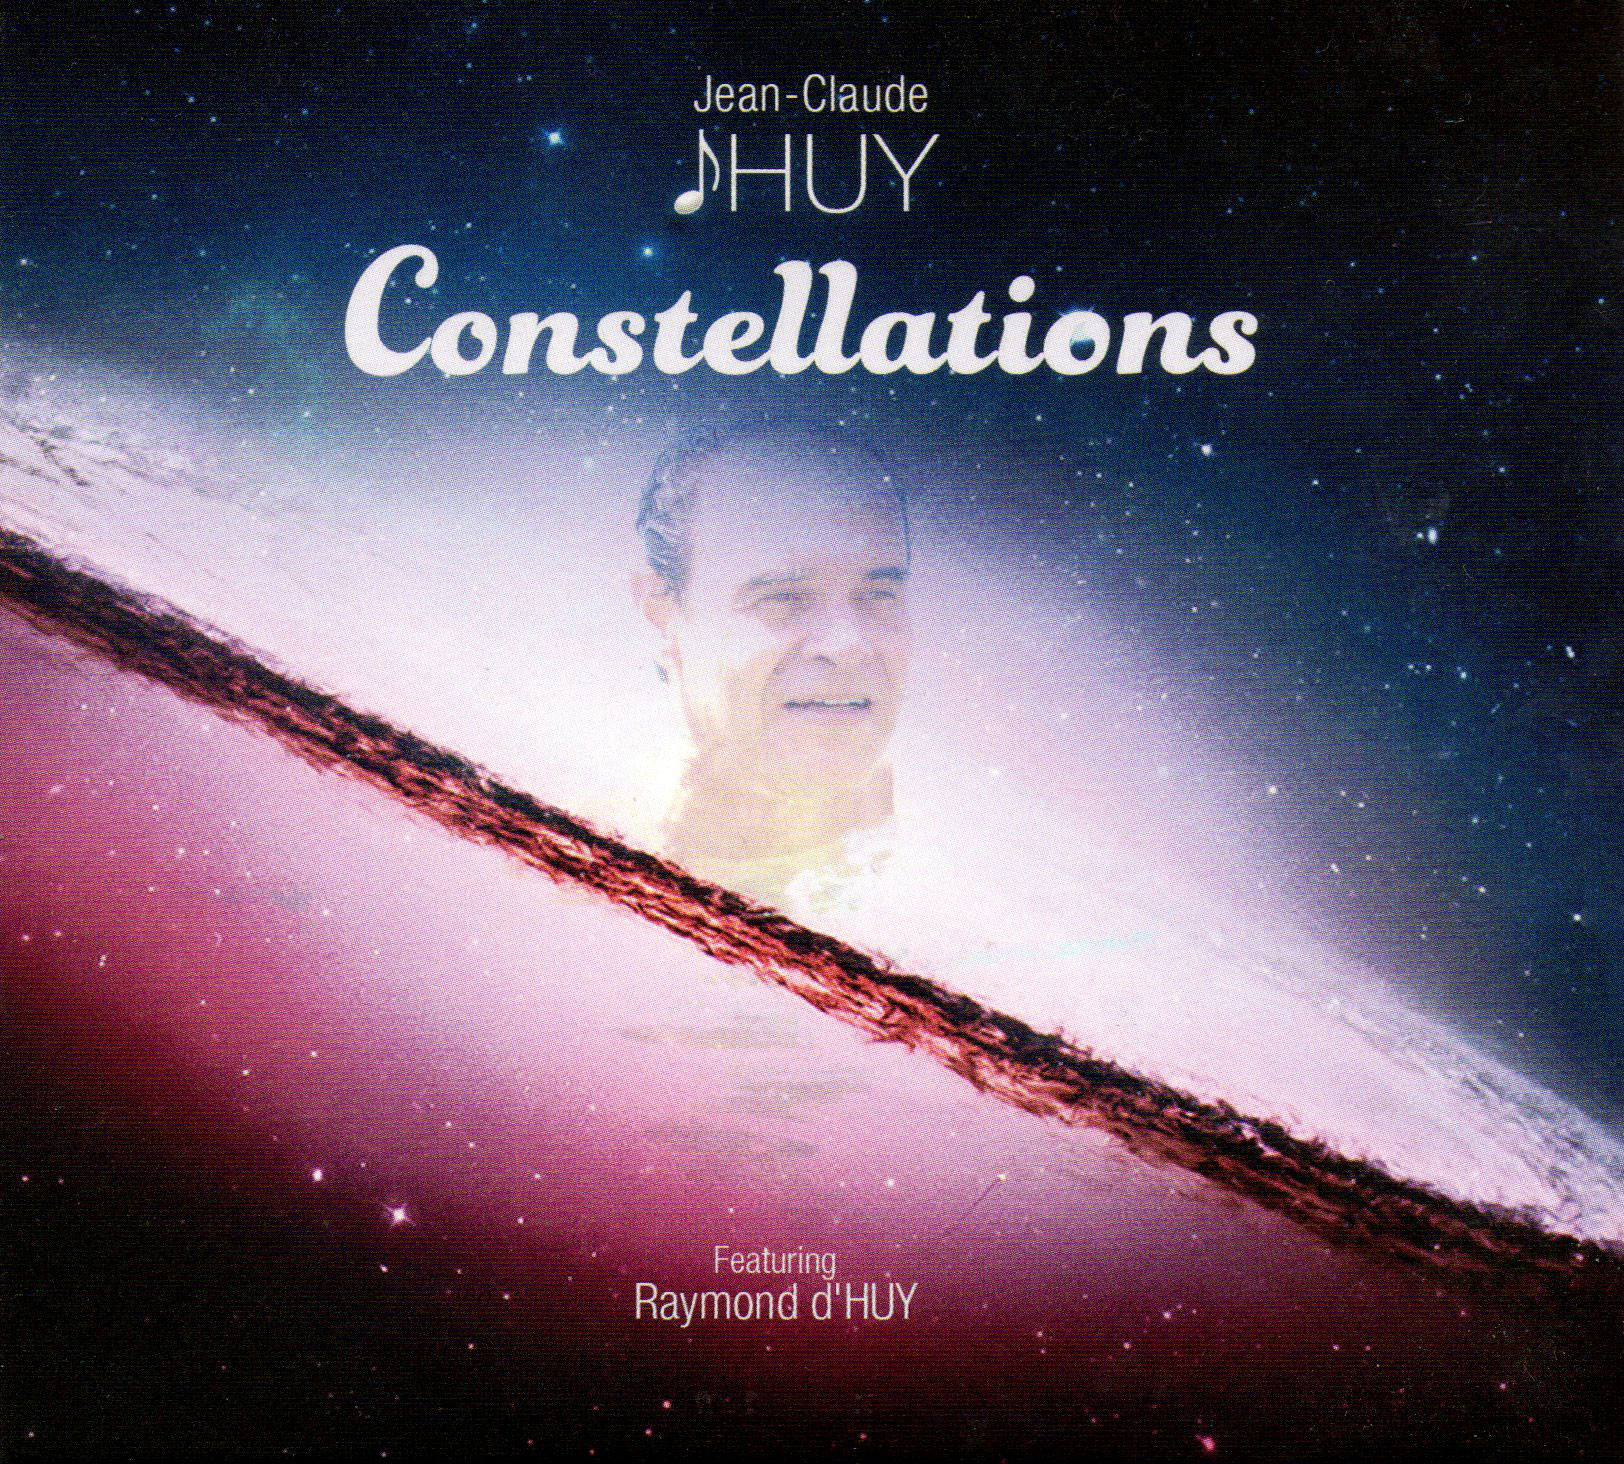 Jean-Claude d'Huy présente "Constellation"